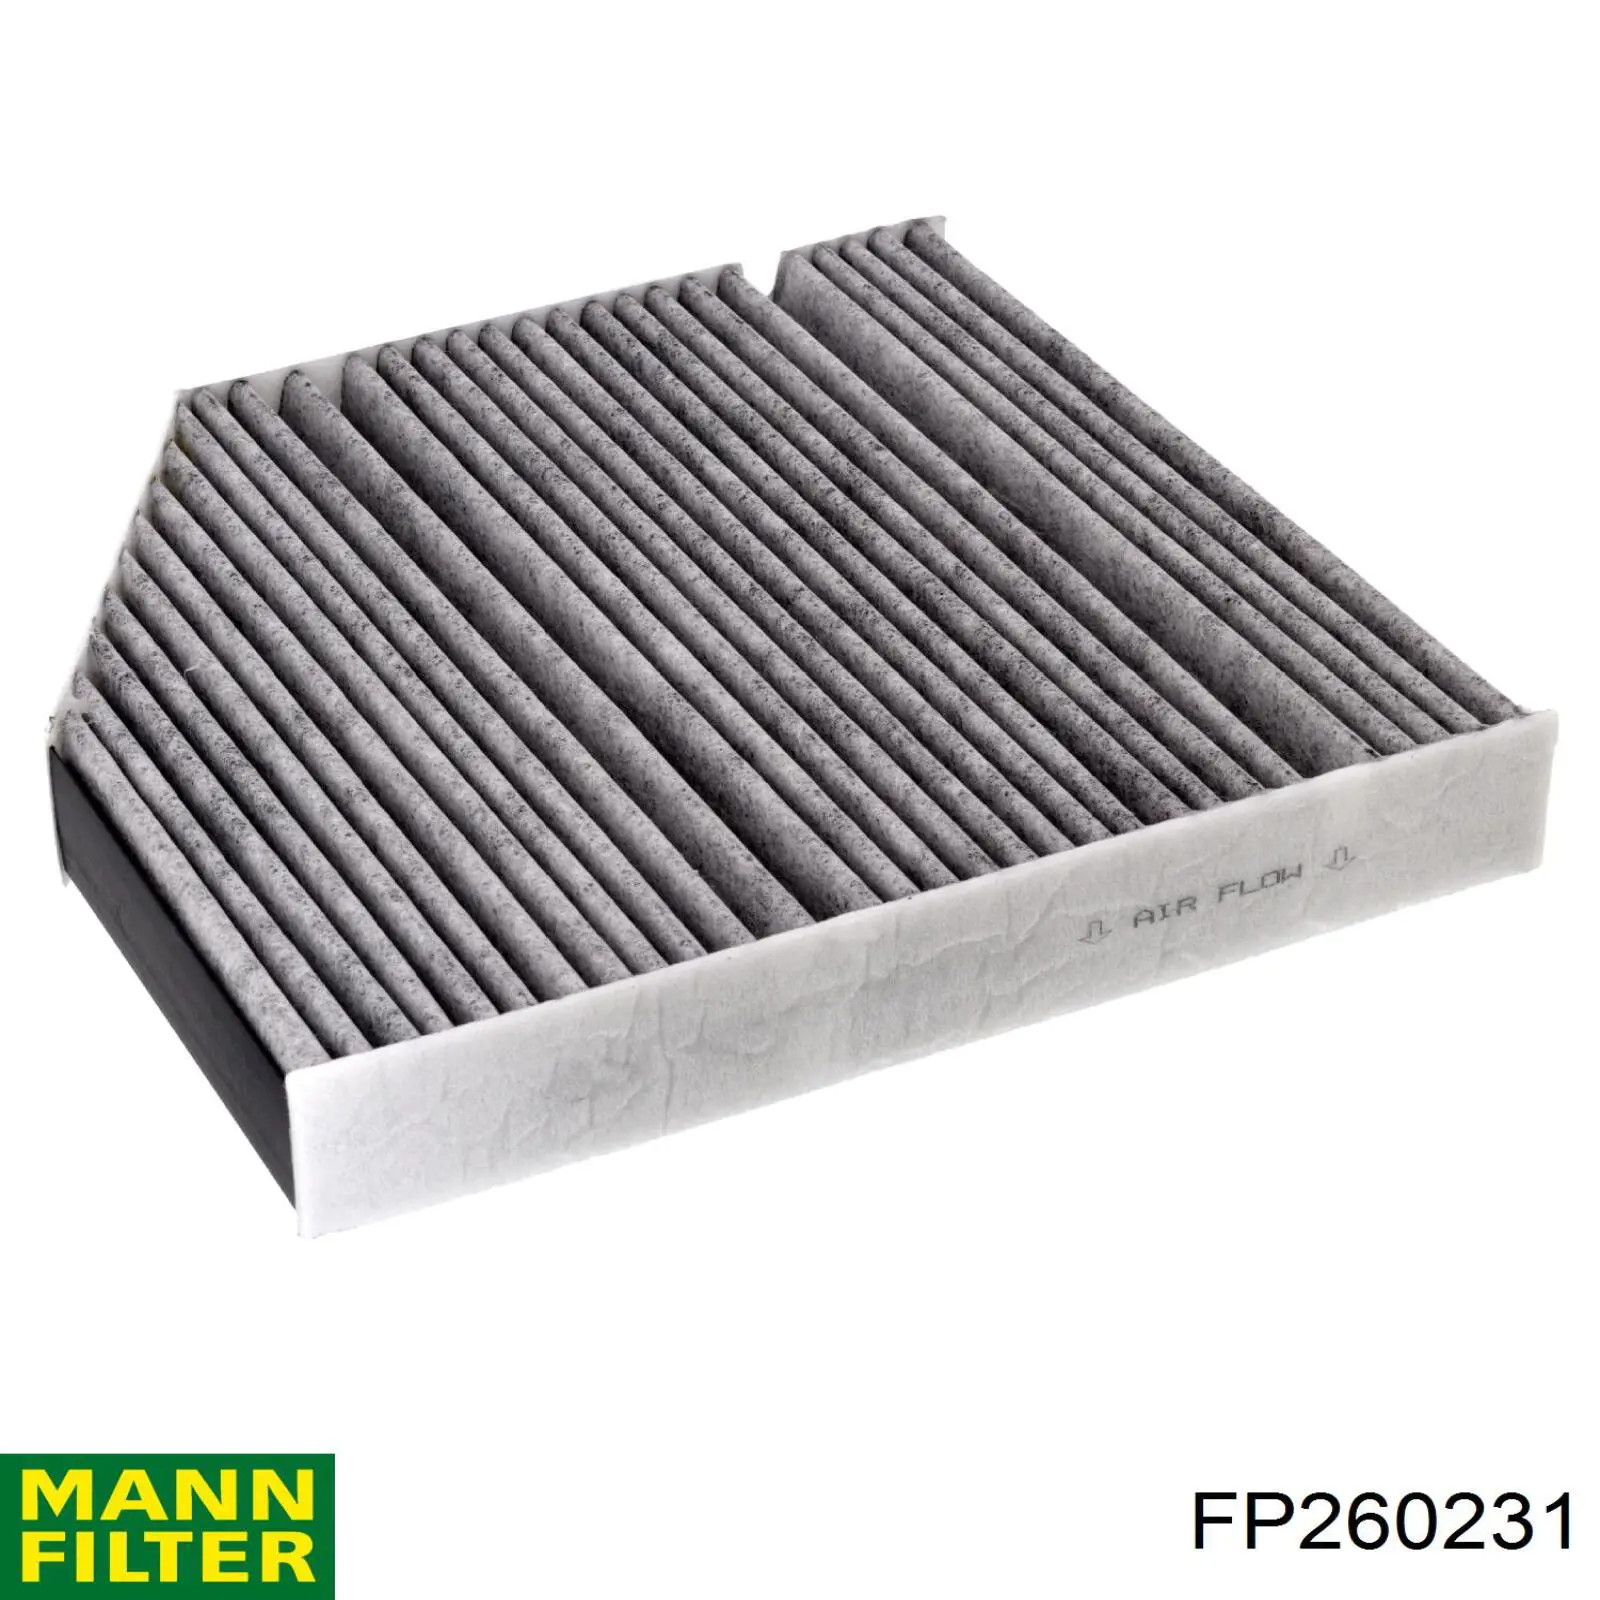 Filtro de habitáculo FP260231 Mann-Filter